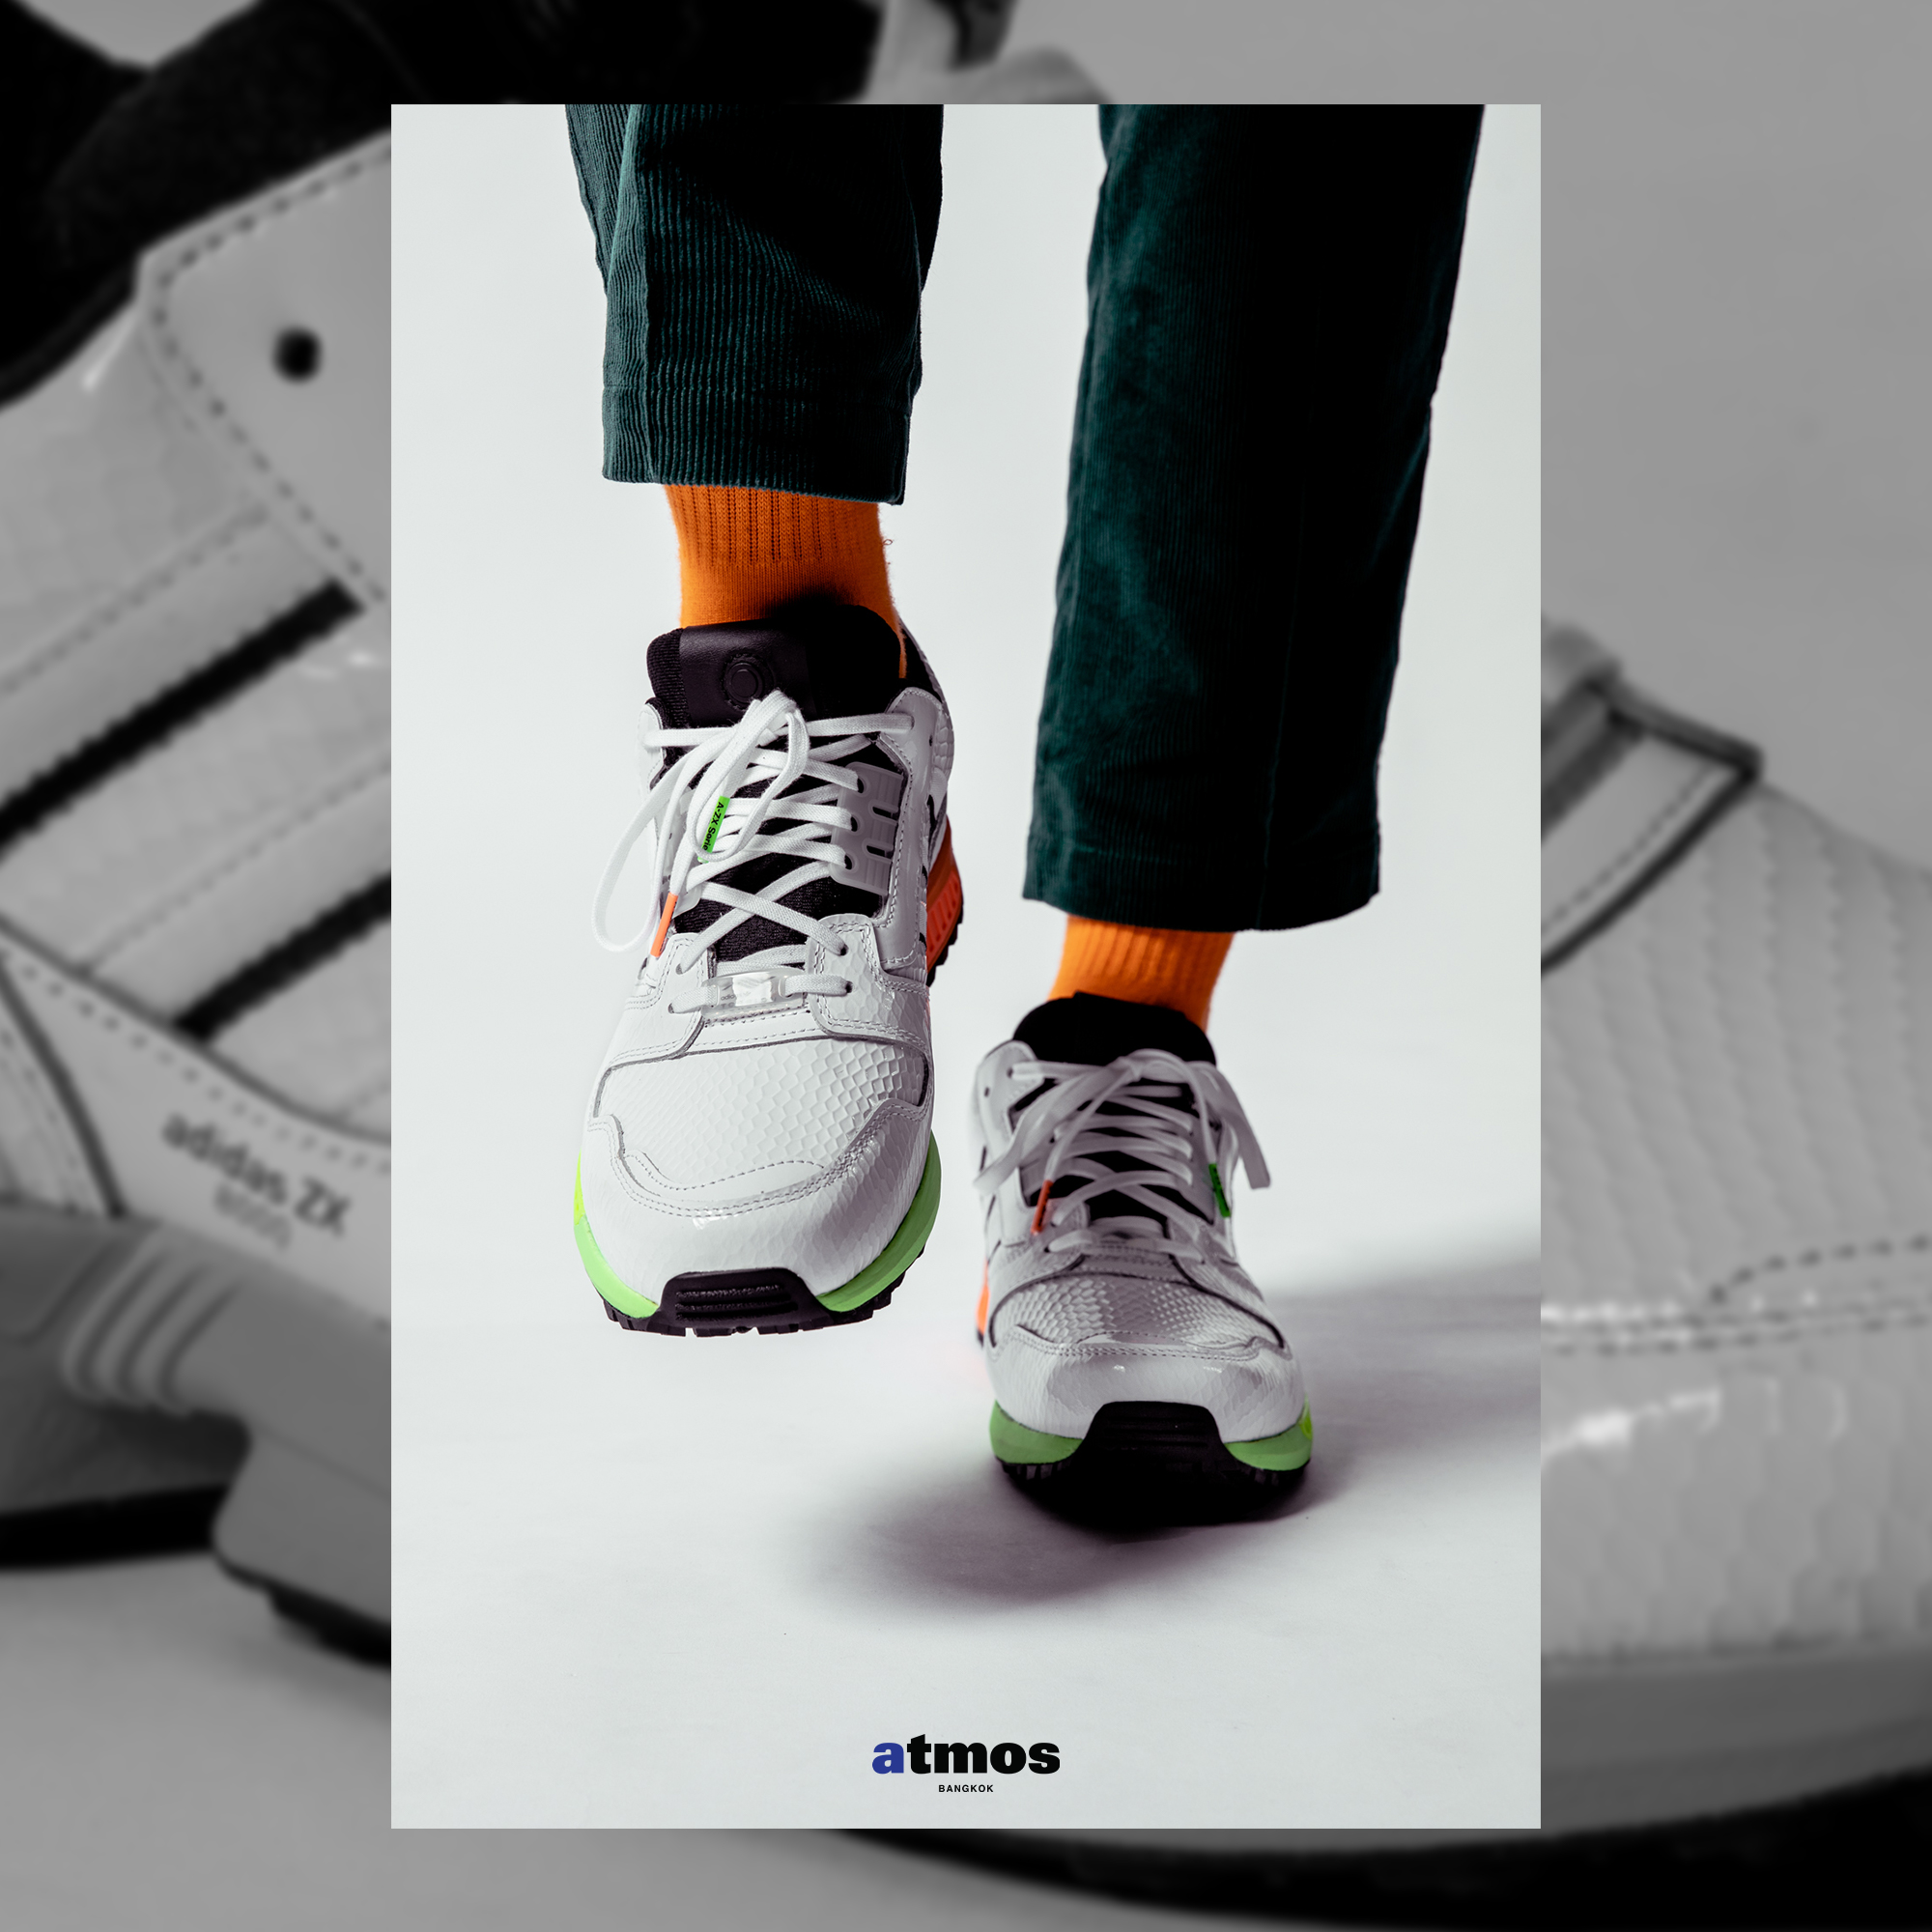 แนะนำ adidas ZX 8000 SG “GOLF" รองเท้าเล่นกอล์ฟที่ถูกดัดแปลงมาจากรองเท้าวิ่งในตำนาน